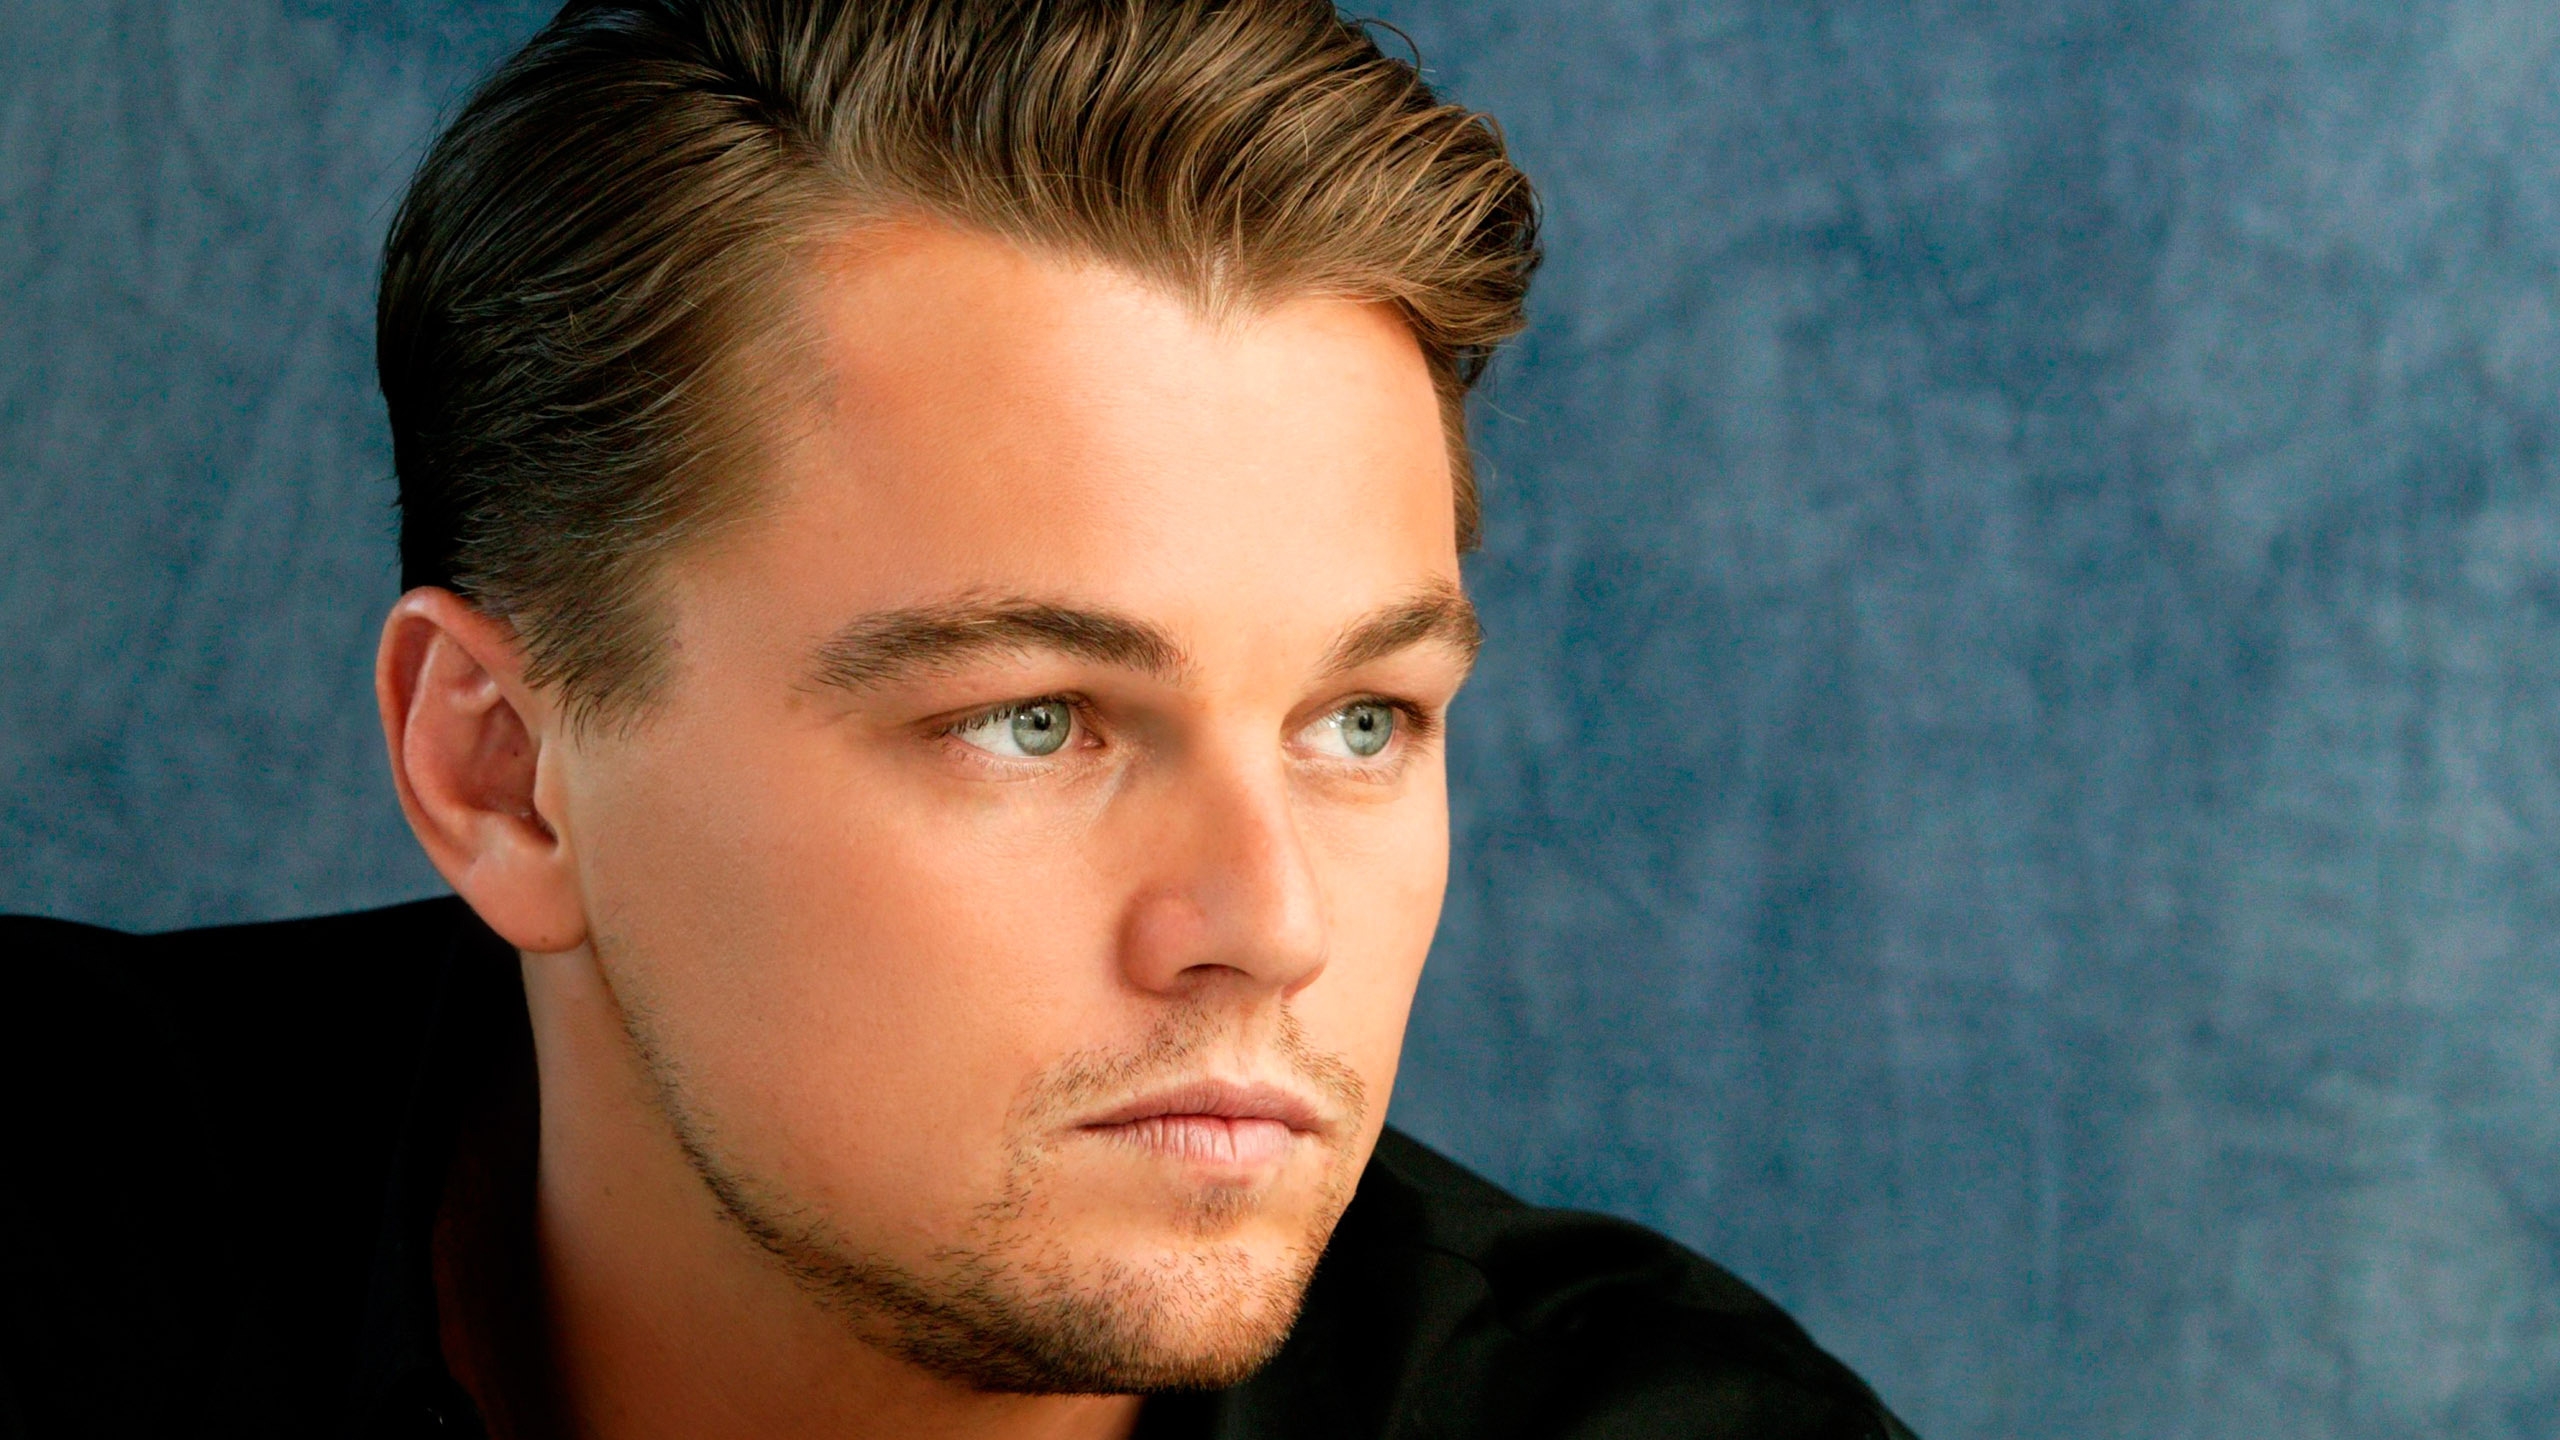 Beautiful Leonardo DiCaprio for 2560x1440 HDTV resolution